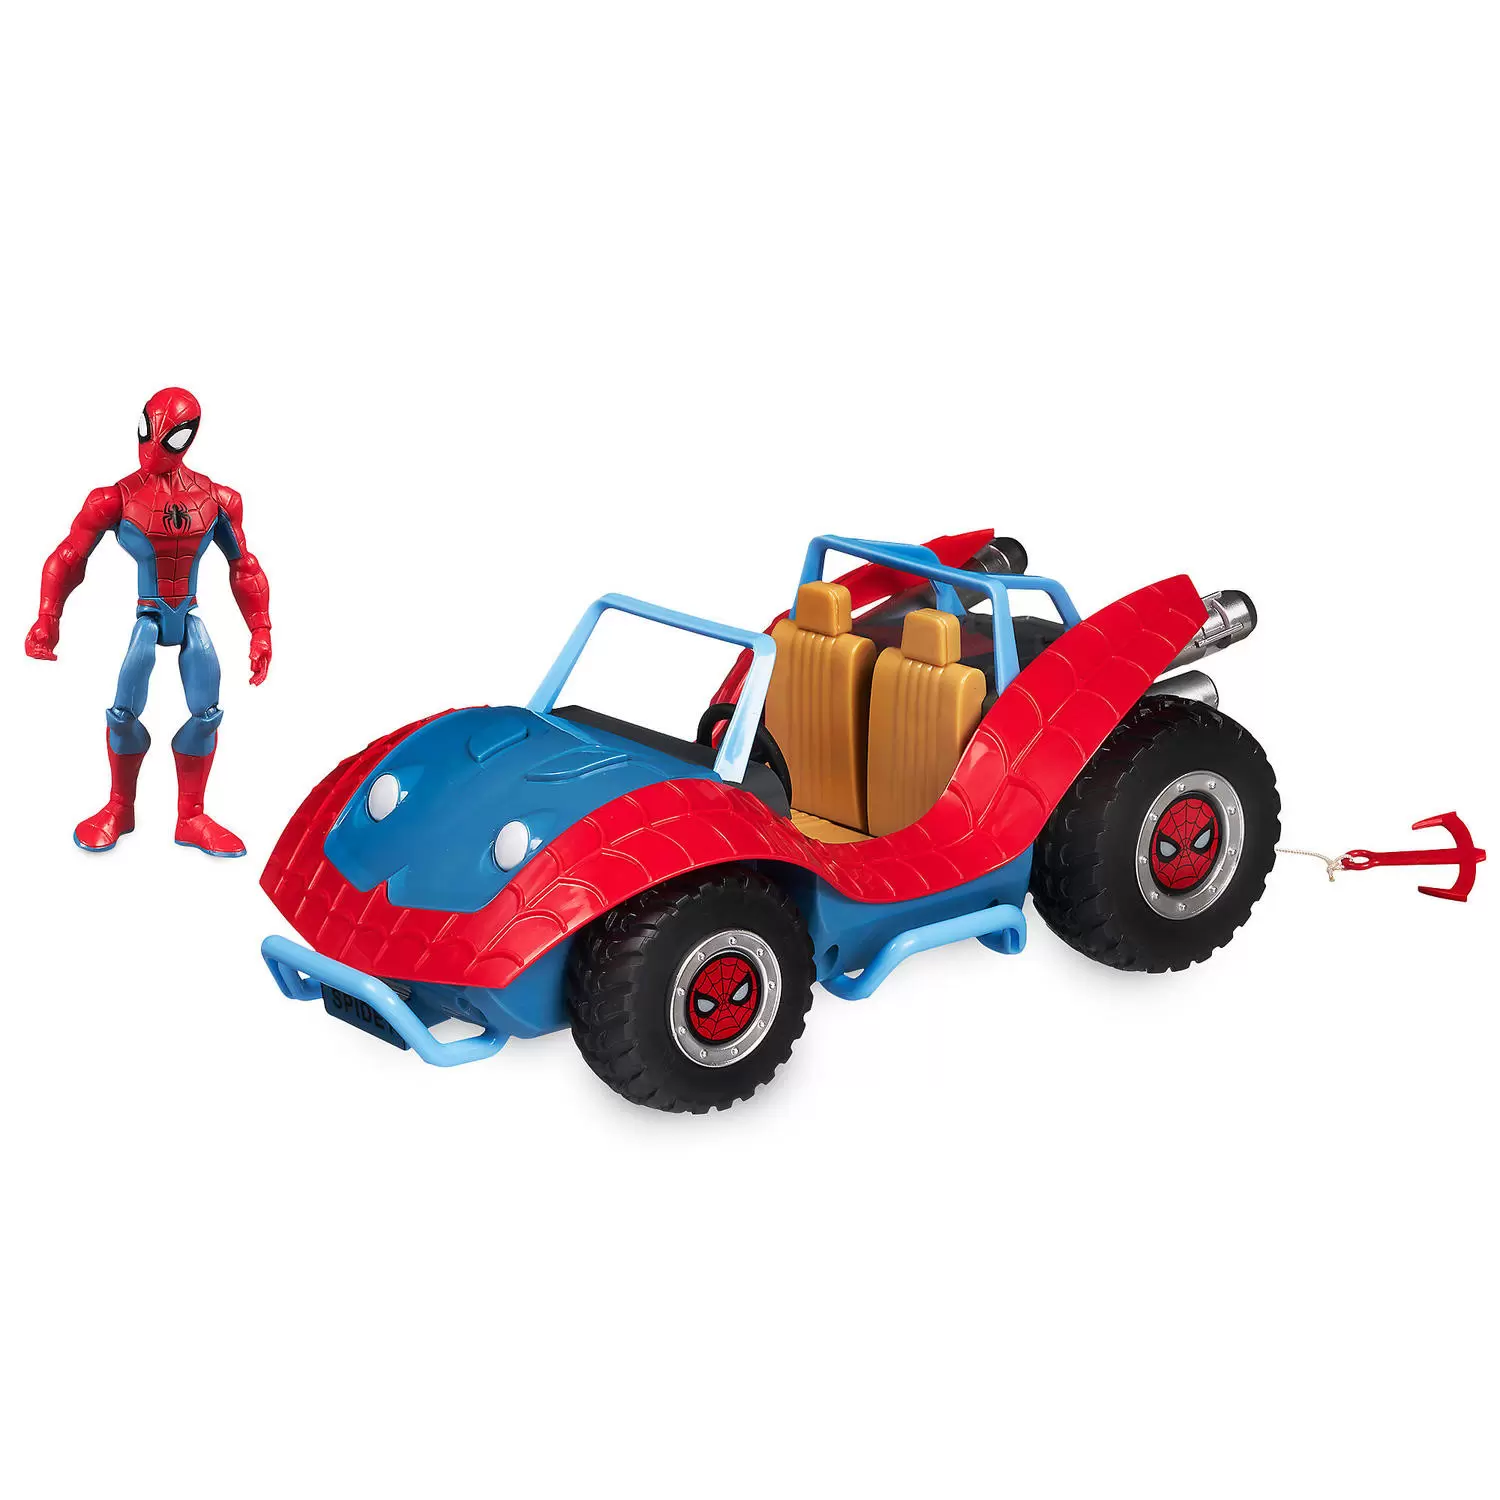 Toybox Disney - The Spider-Mobile & Spider-man Set